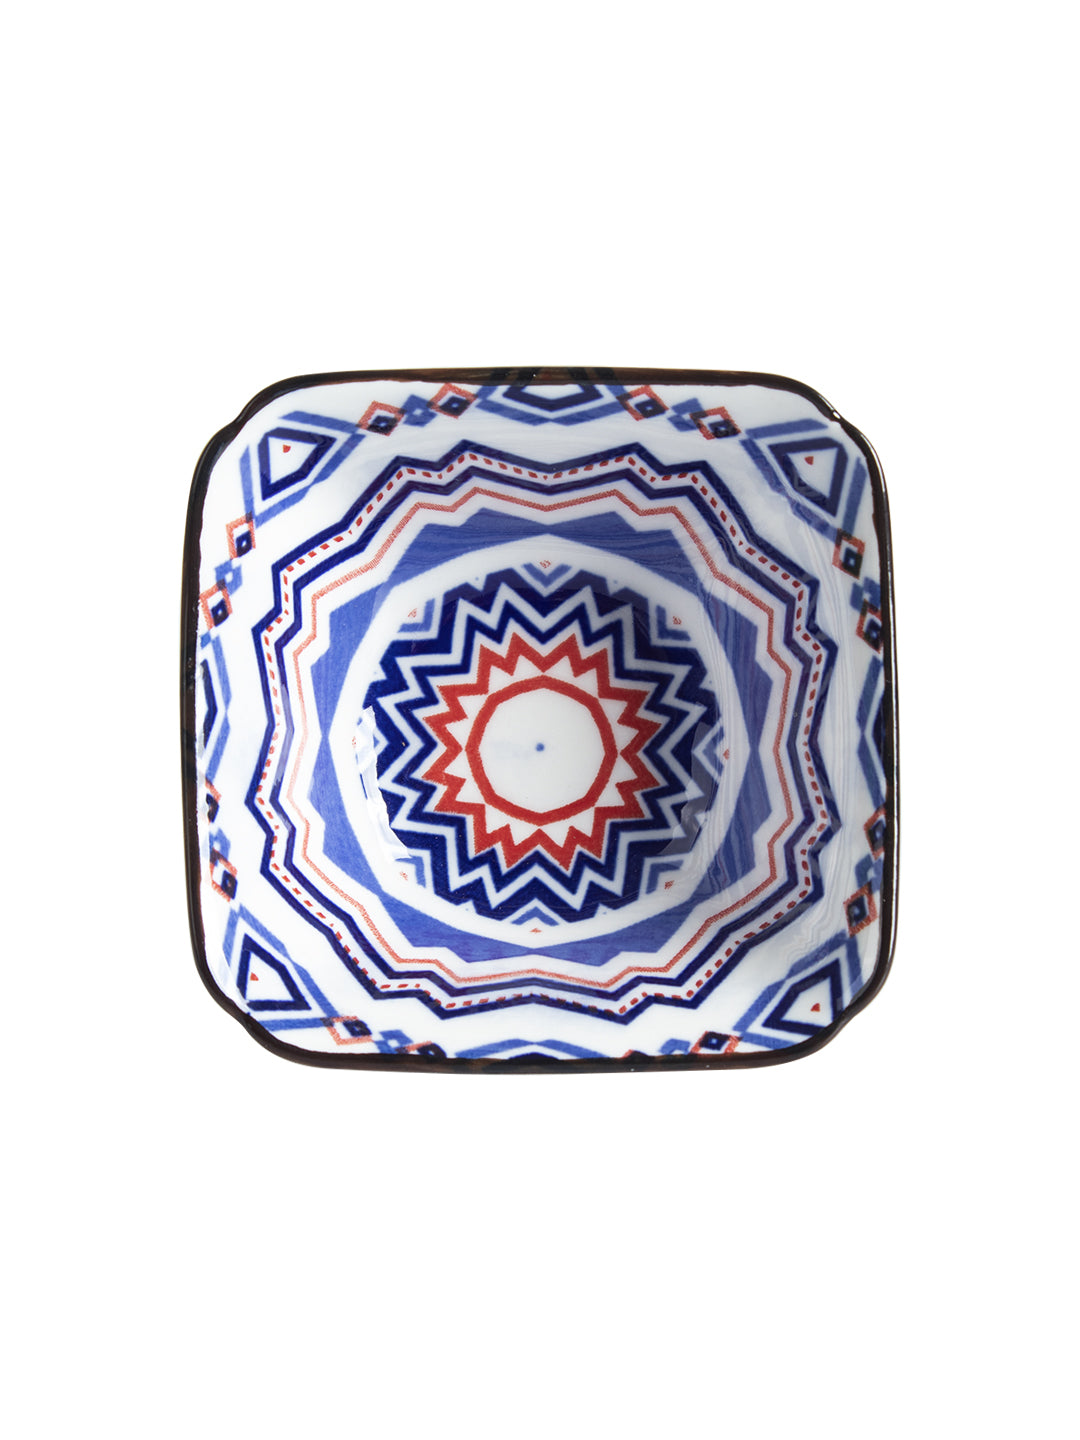 VON CASA 120 Ml Ceramic Serving Bowls - Blue, Set Of 2